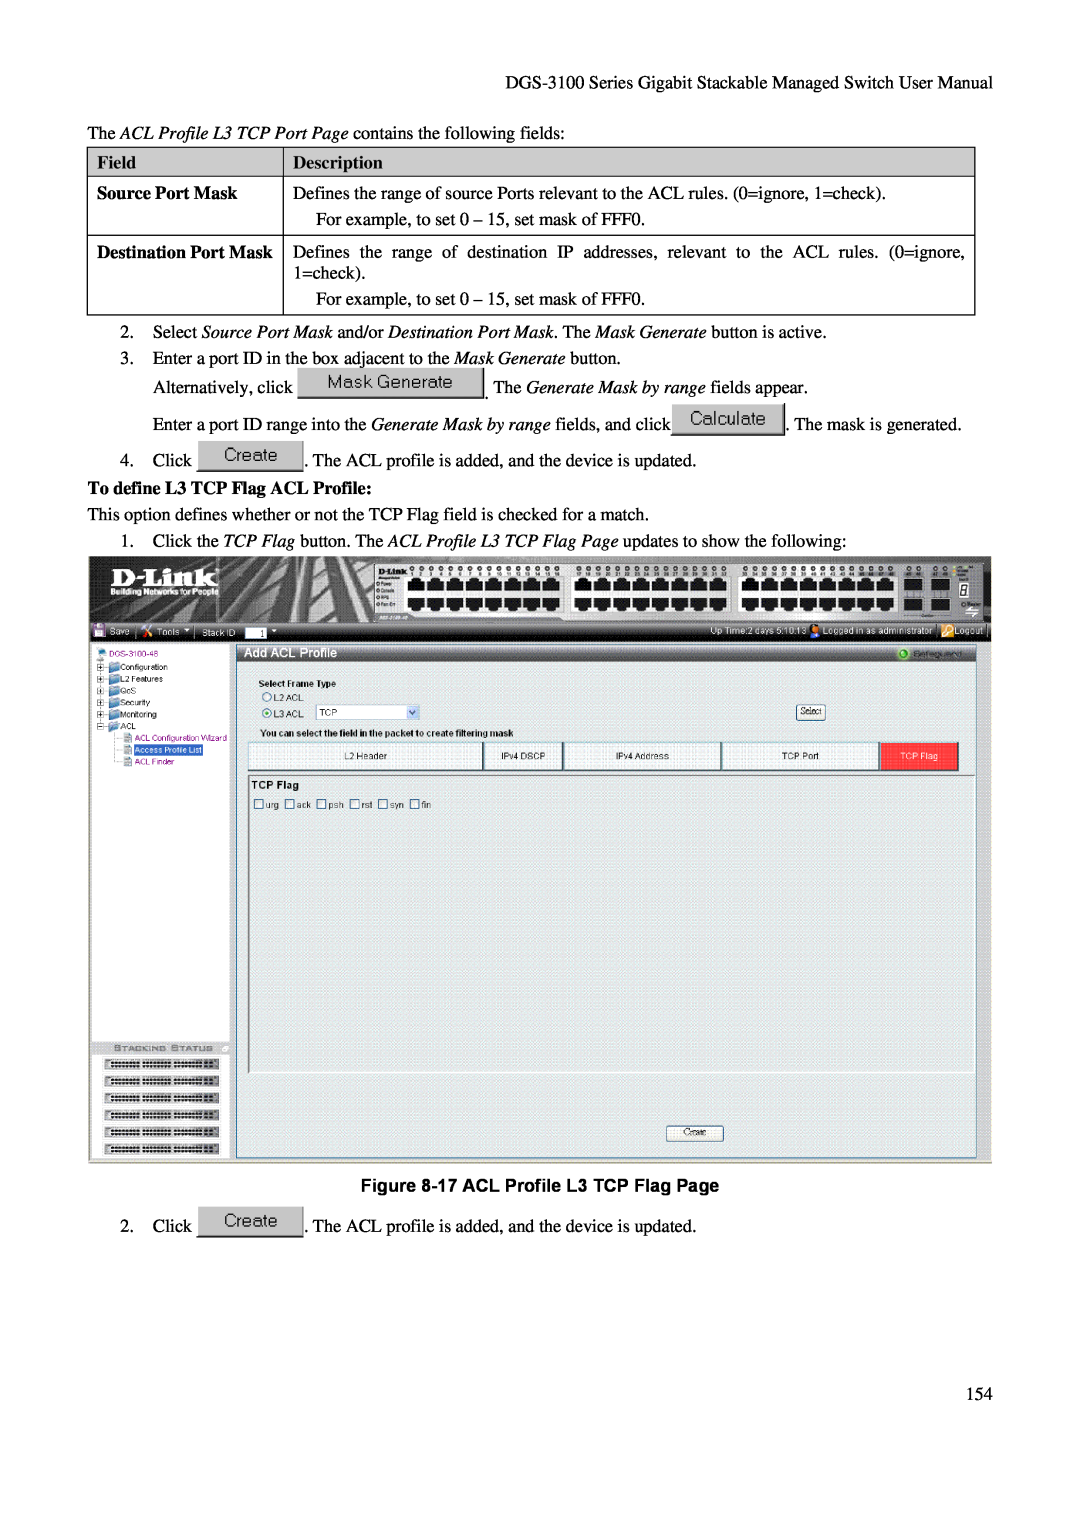 D-Link DGS-3100 user manual Description, To define L3 TCP Flag ACL Profile, 17 ACL Profile L3 TCP Flag Page 